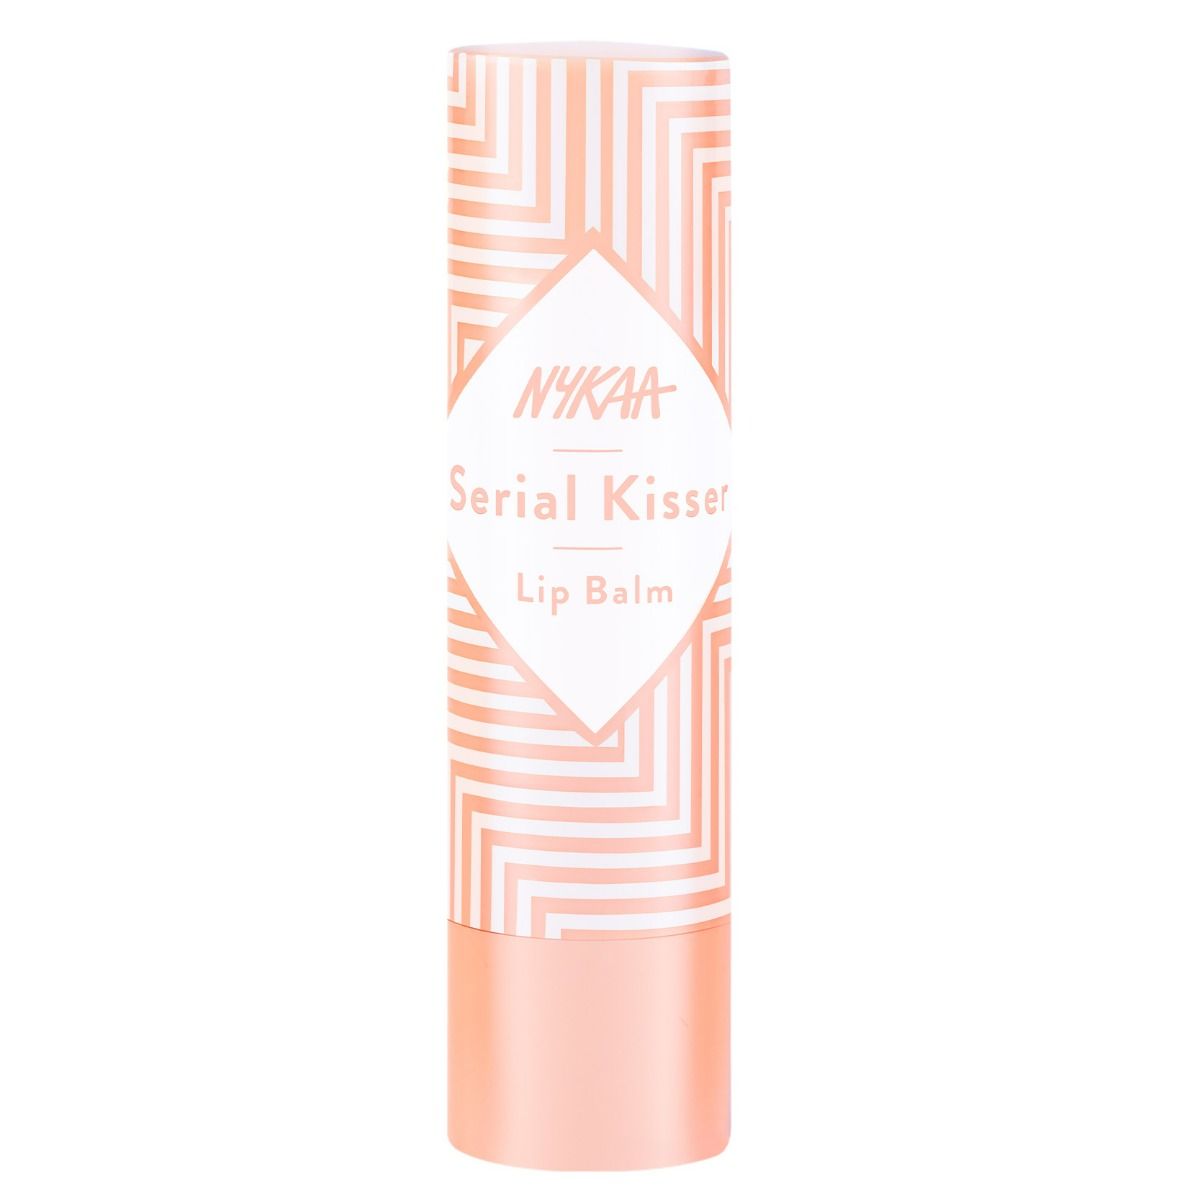 Nykaa Serial Kisser Peach Flavour Lip Balm, 4.5 gm, Pack of 1 